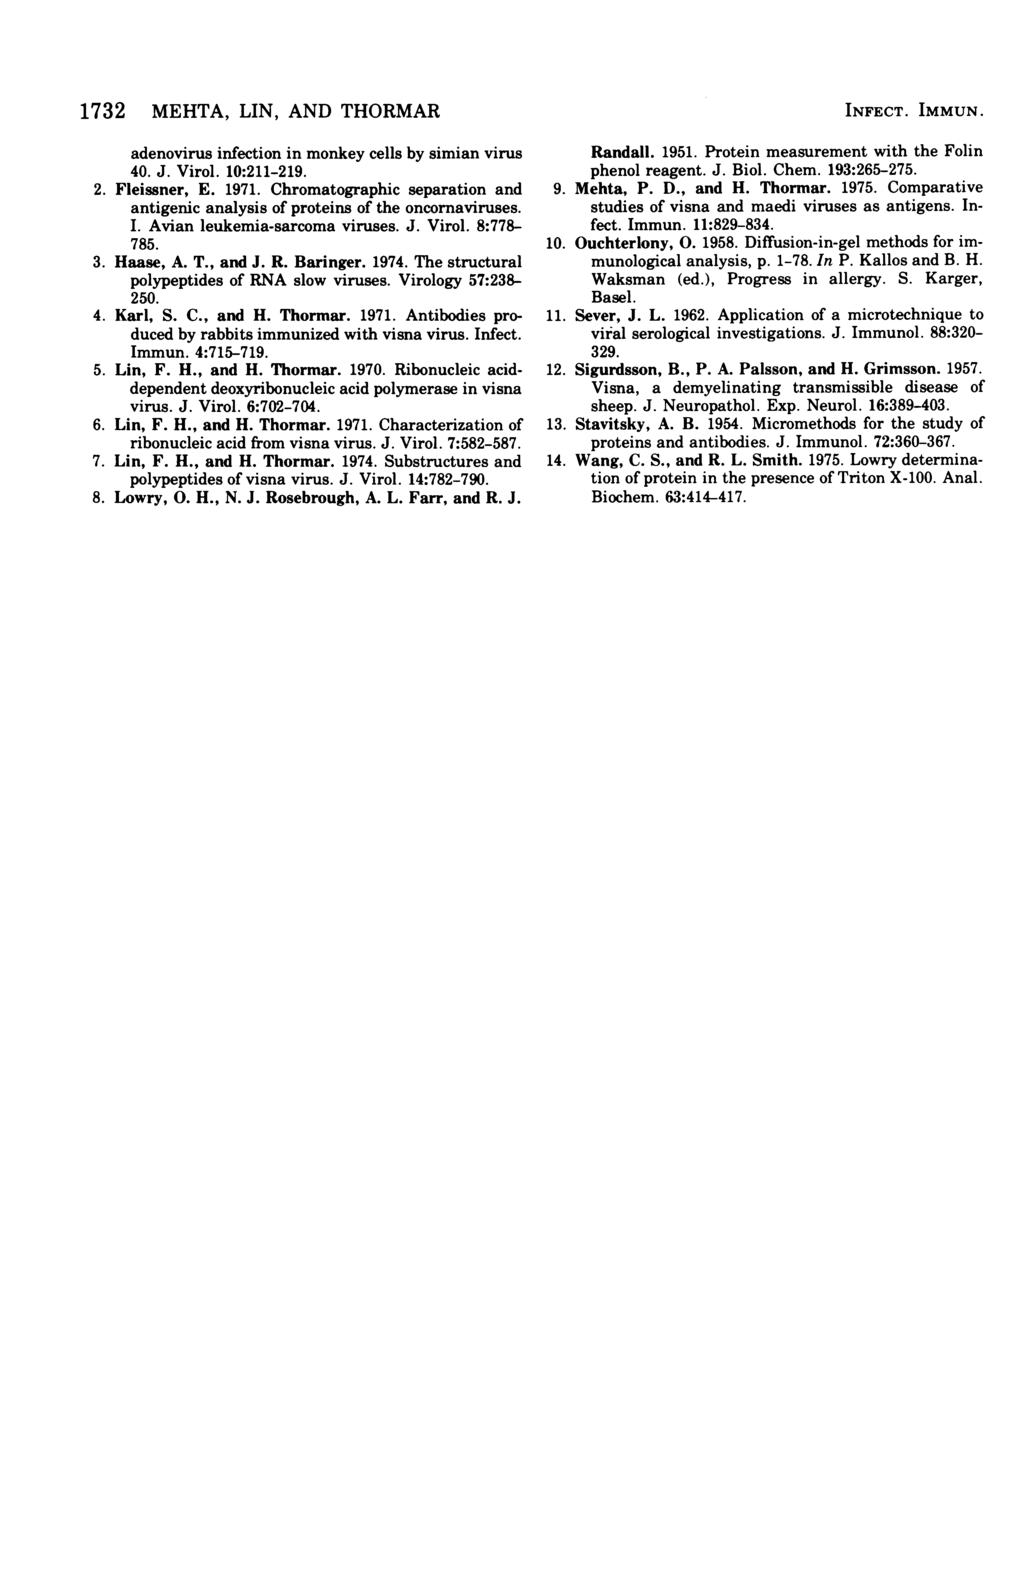 1732 MEHTA, LIN, AND THORMAR adenovirus infection in monkey cells by simian virus 4. J. Virol. 1:211-219. 2. Fleissner, E. 1971.